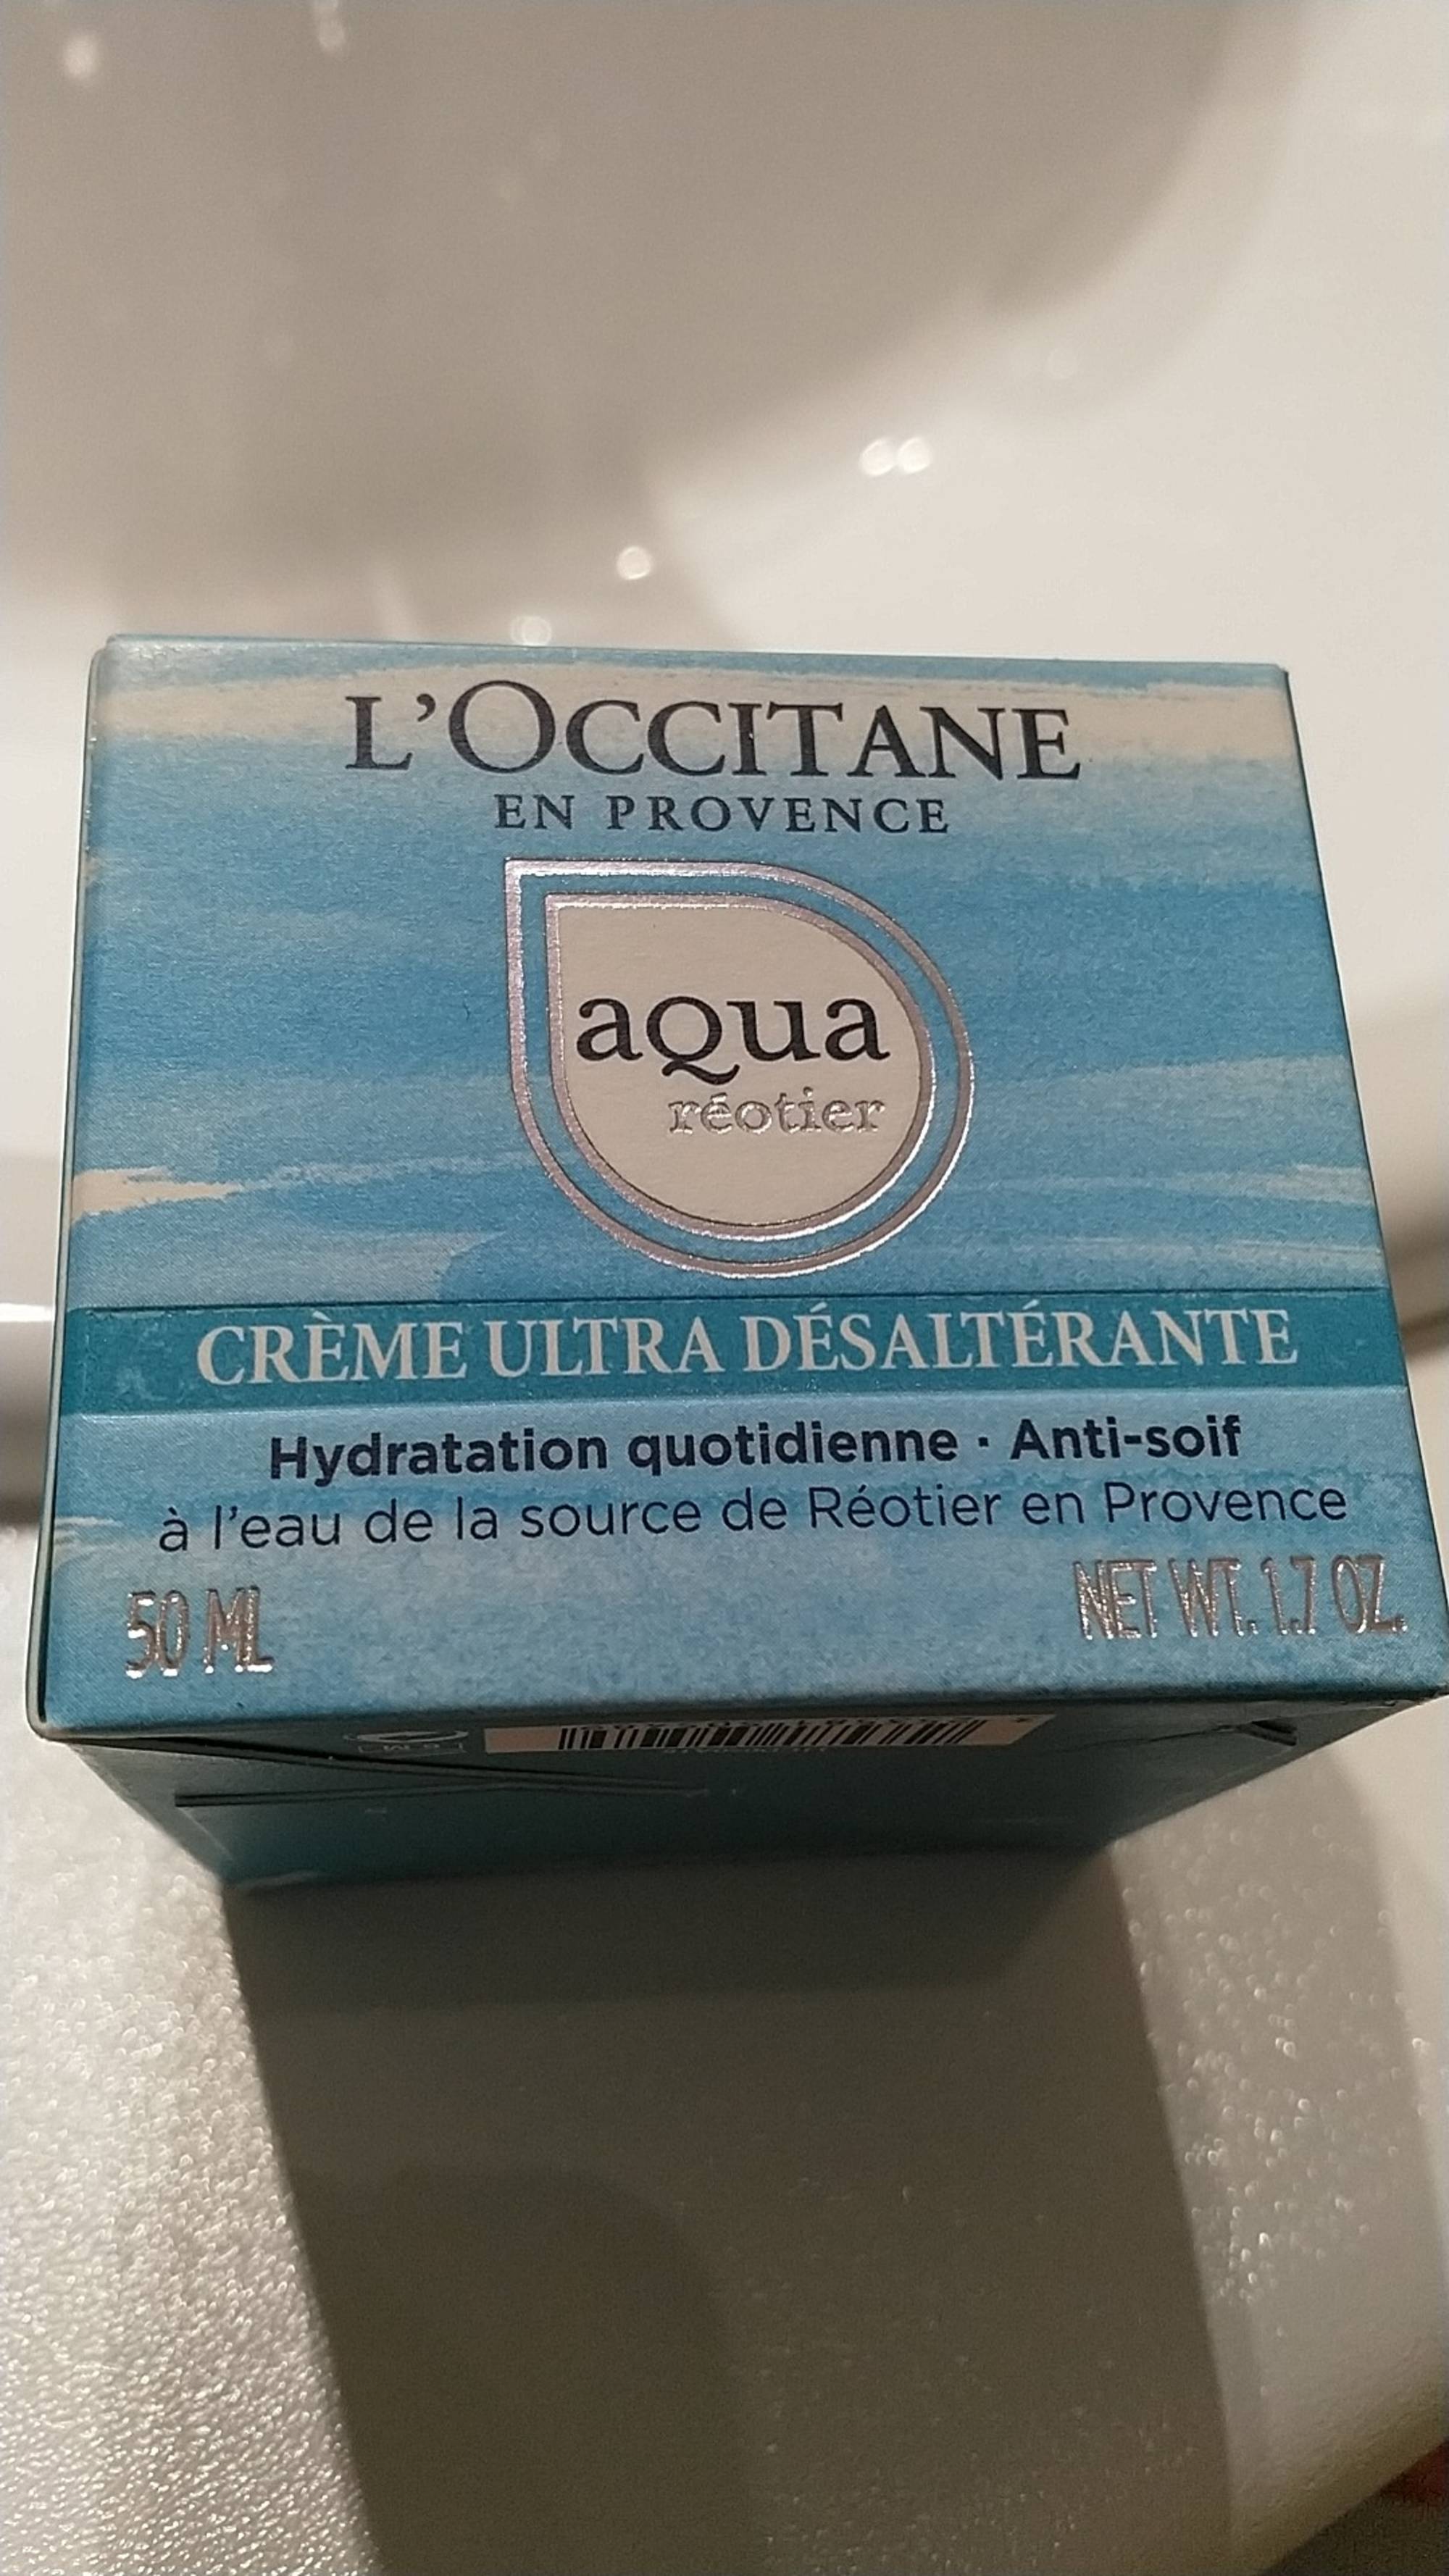 L'OCCITANE - Aqua réotier - Crème ultra désaltérante